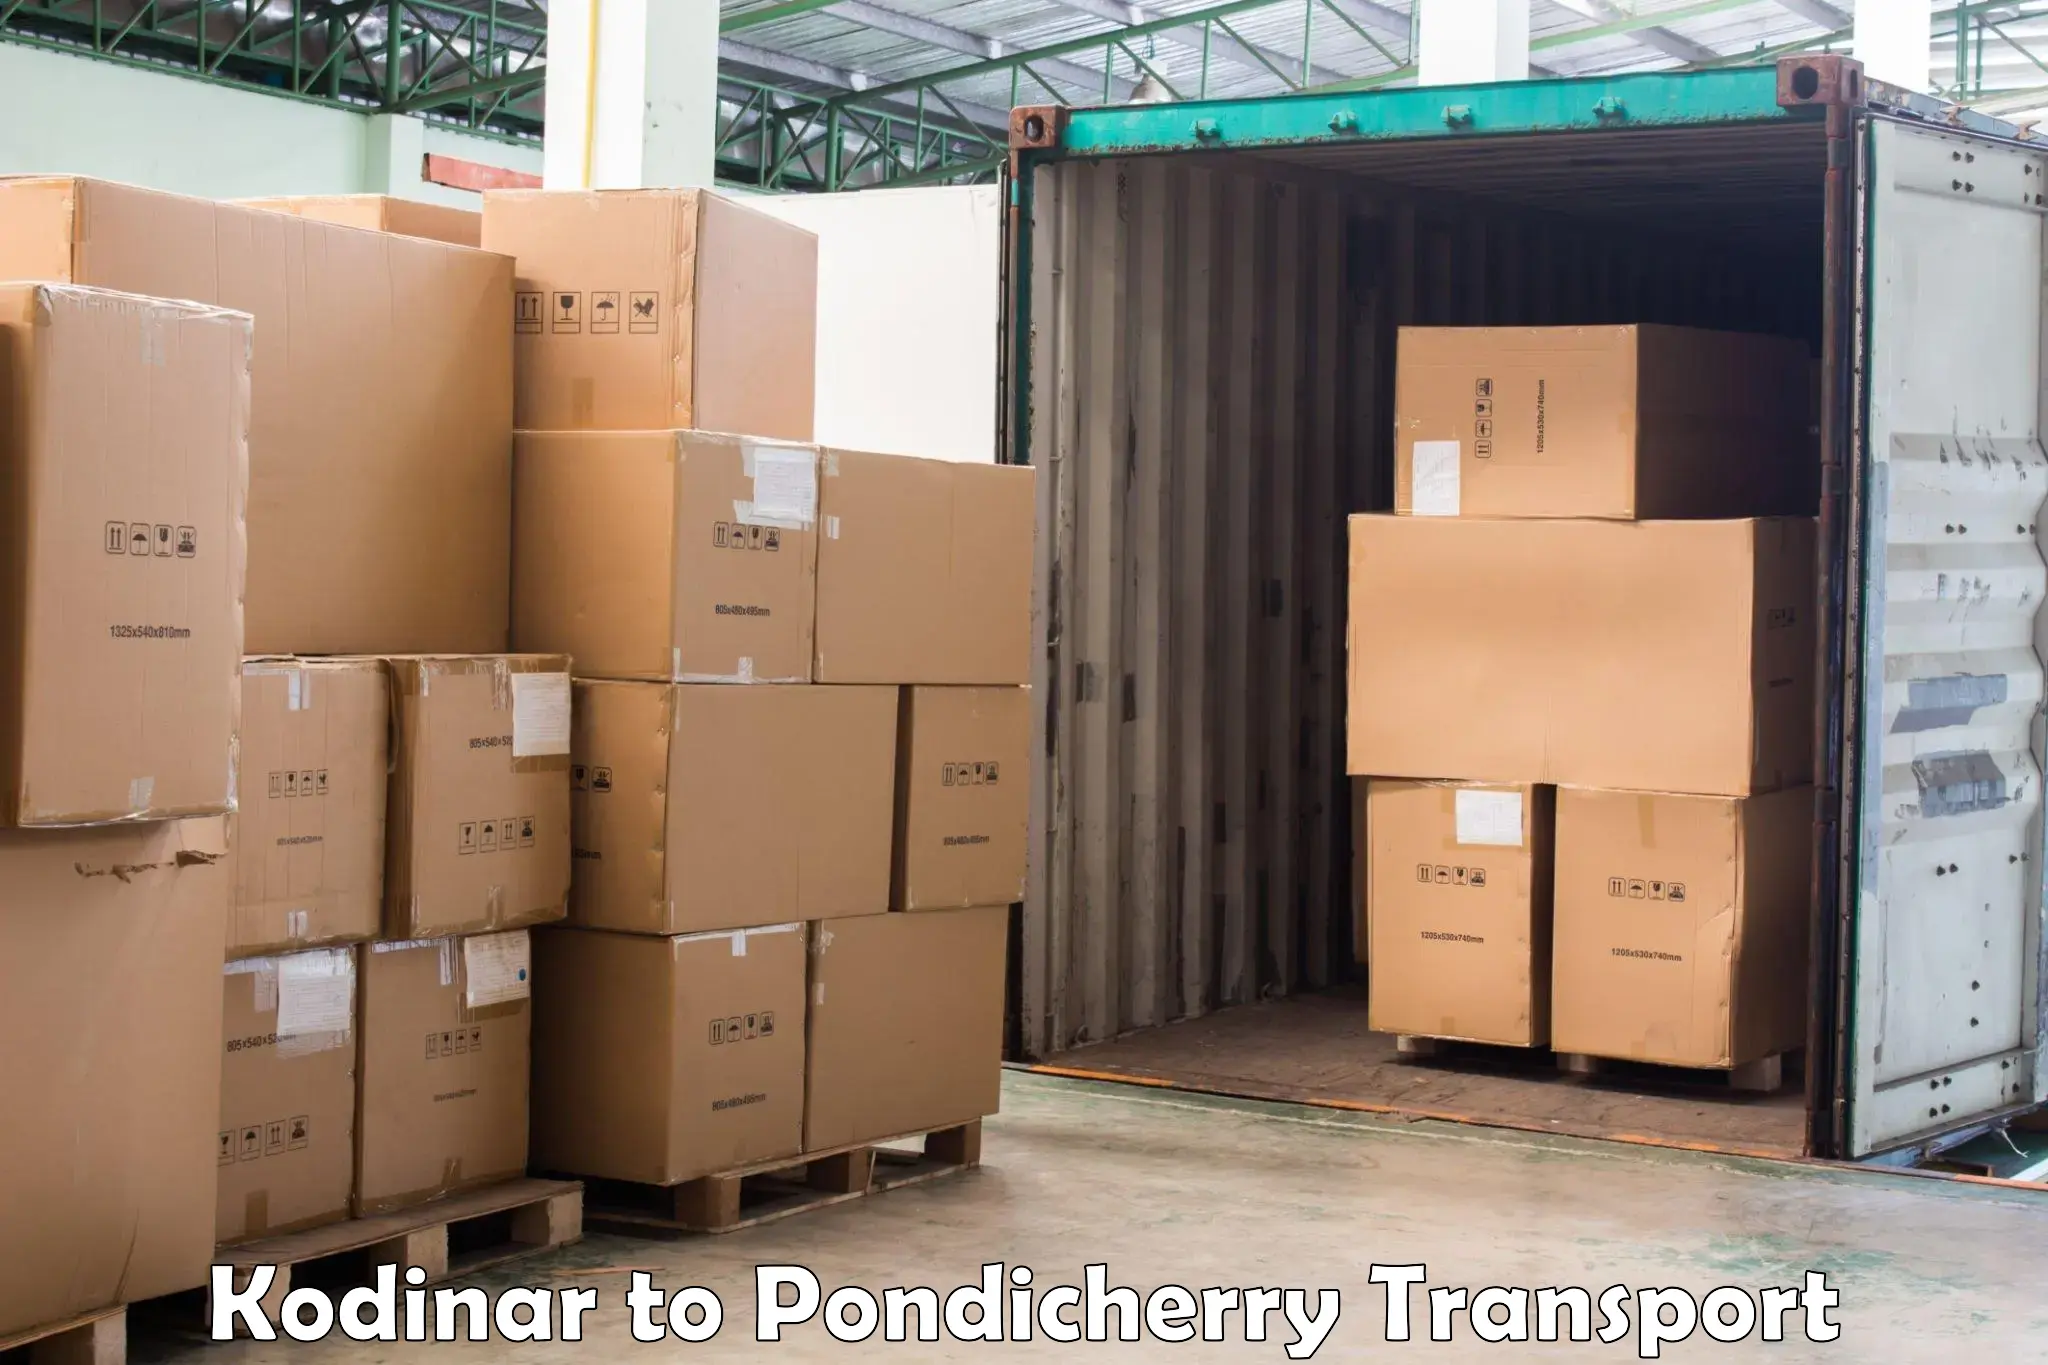 Daily parcel service transport Kodinar to Pondicherry University